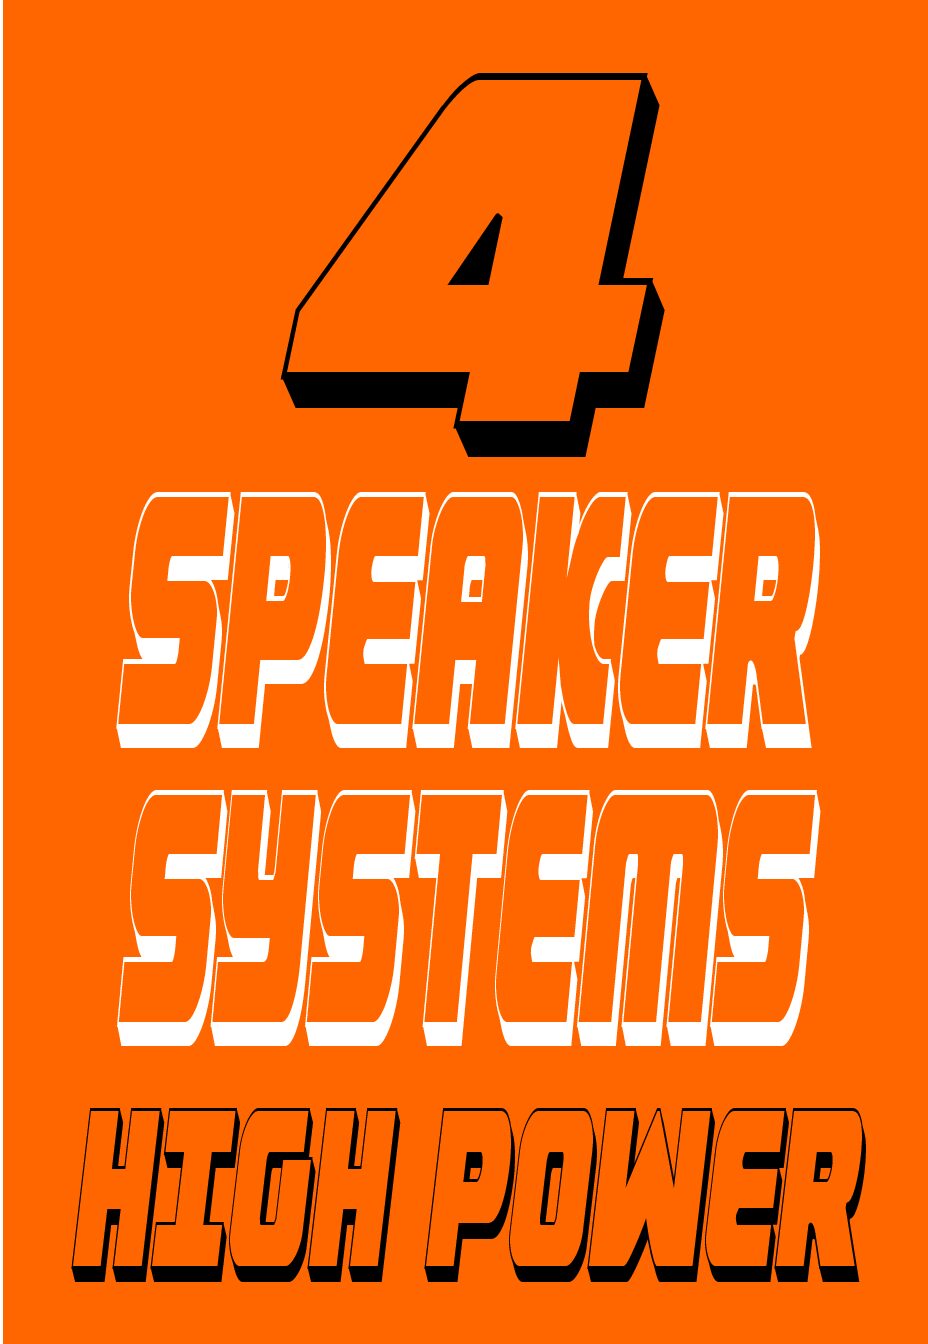 XP1K 4 SPEAKER SYSTEM HIGH POWER 14-18